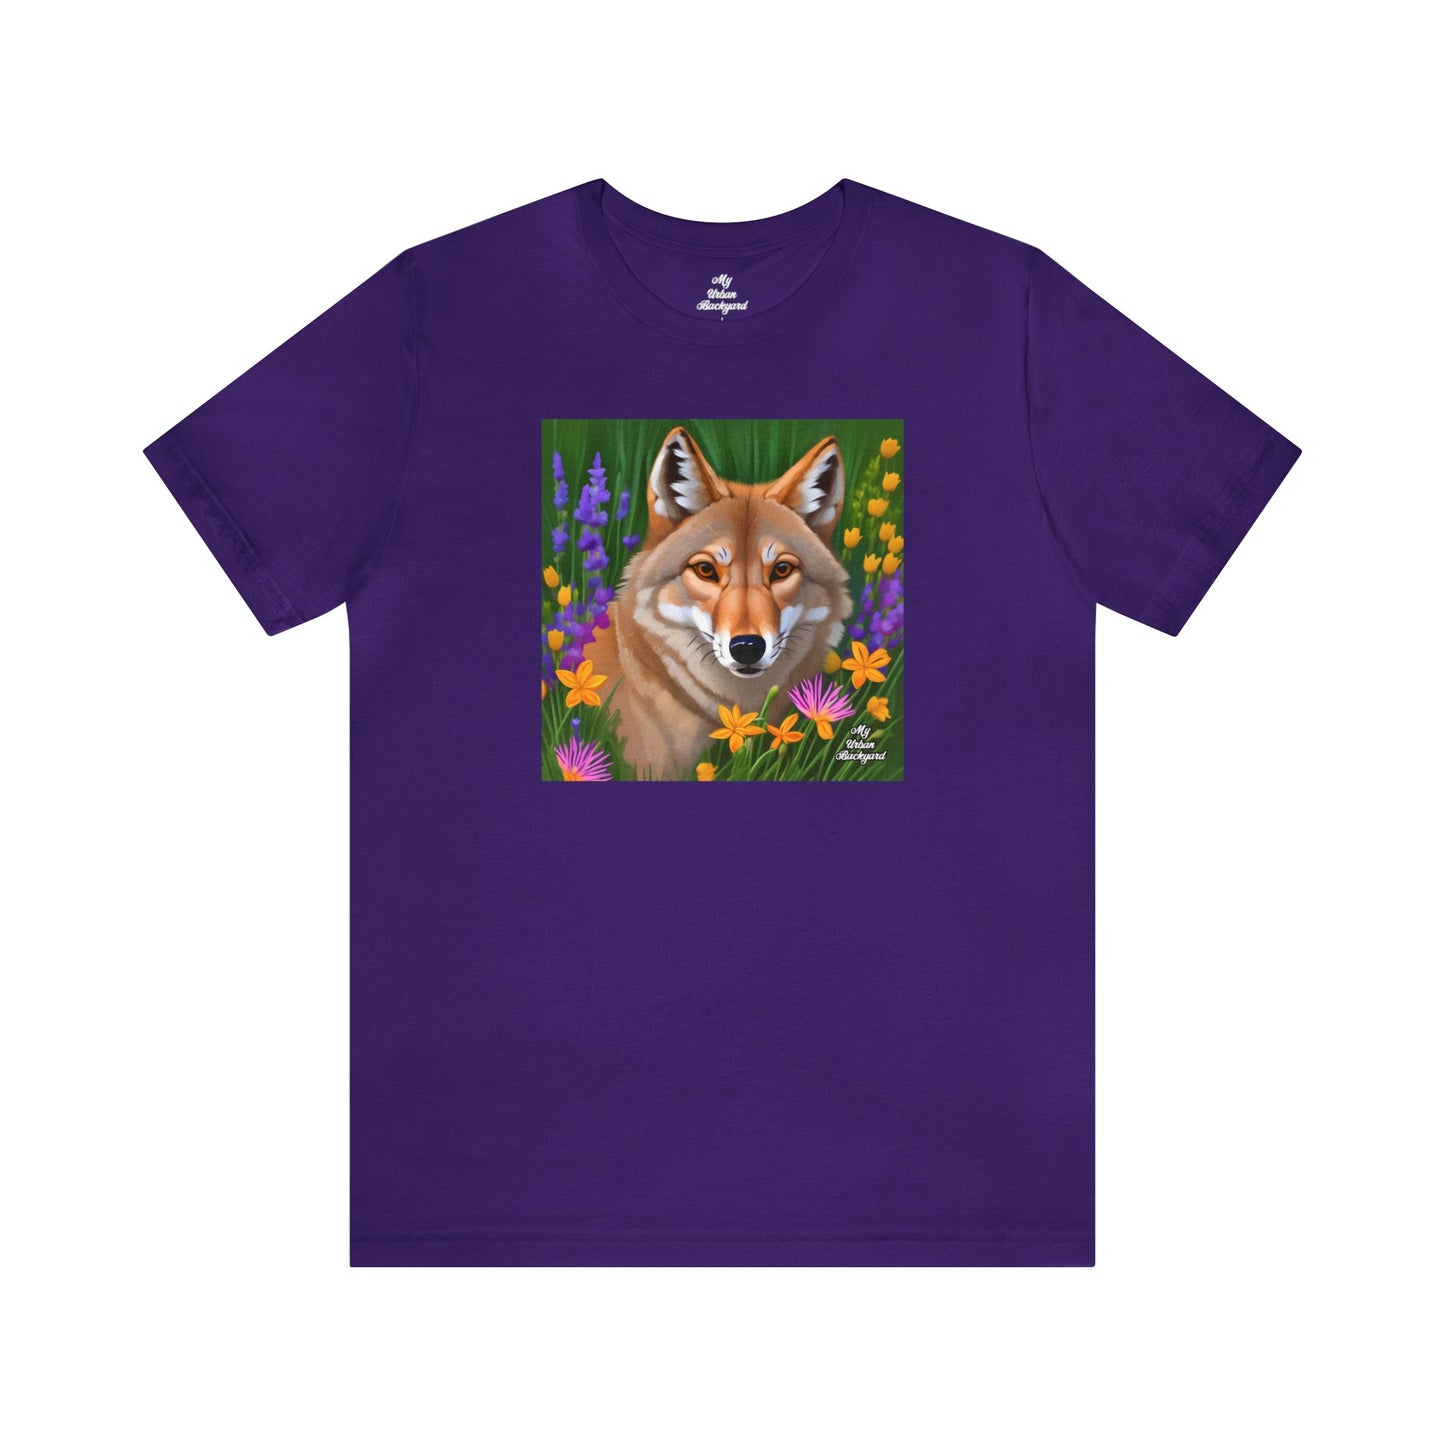 Coyote Portrait, Soft 100% Jersey Cotton T-Shirt, Unisex, Short Sleeve, Retail Fit